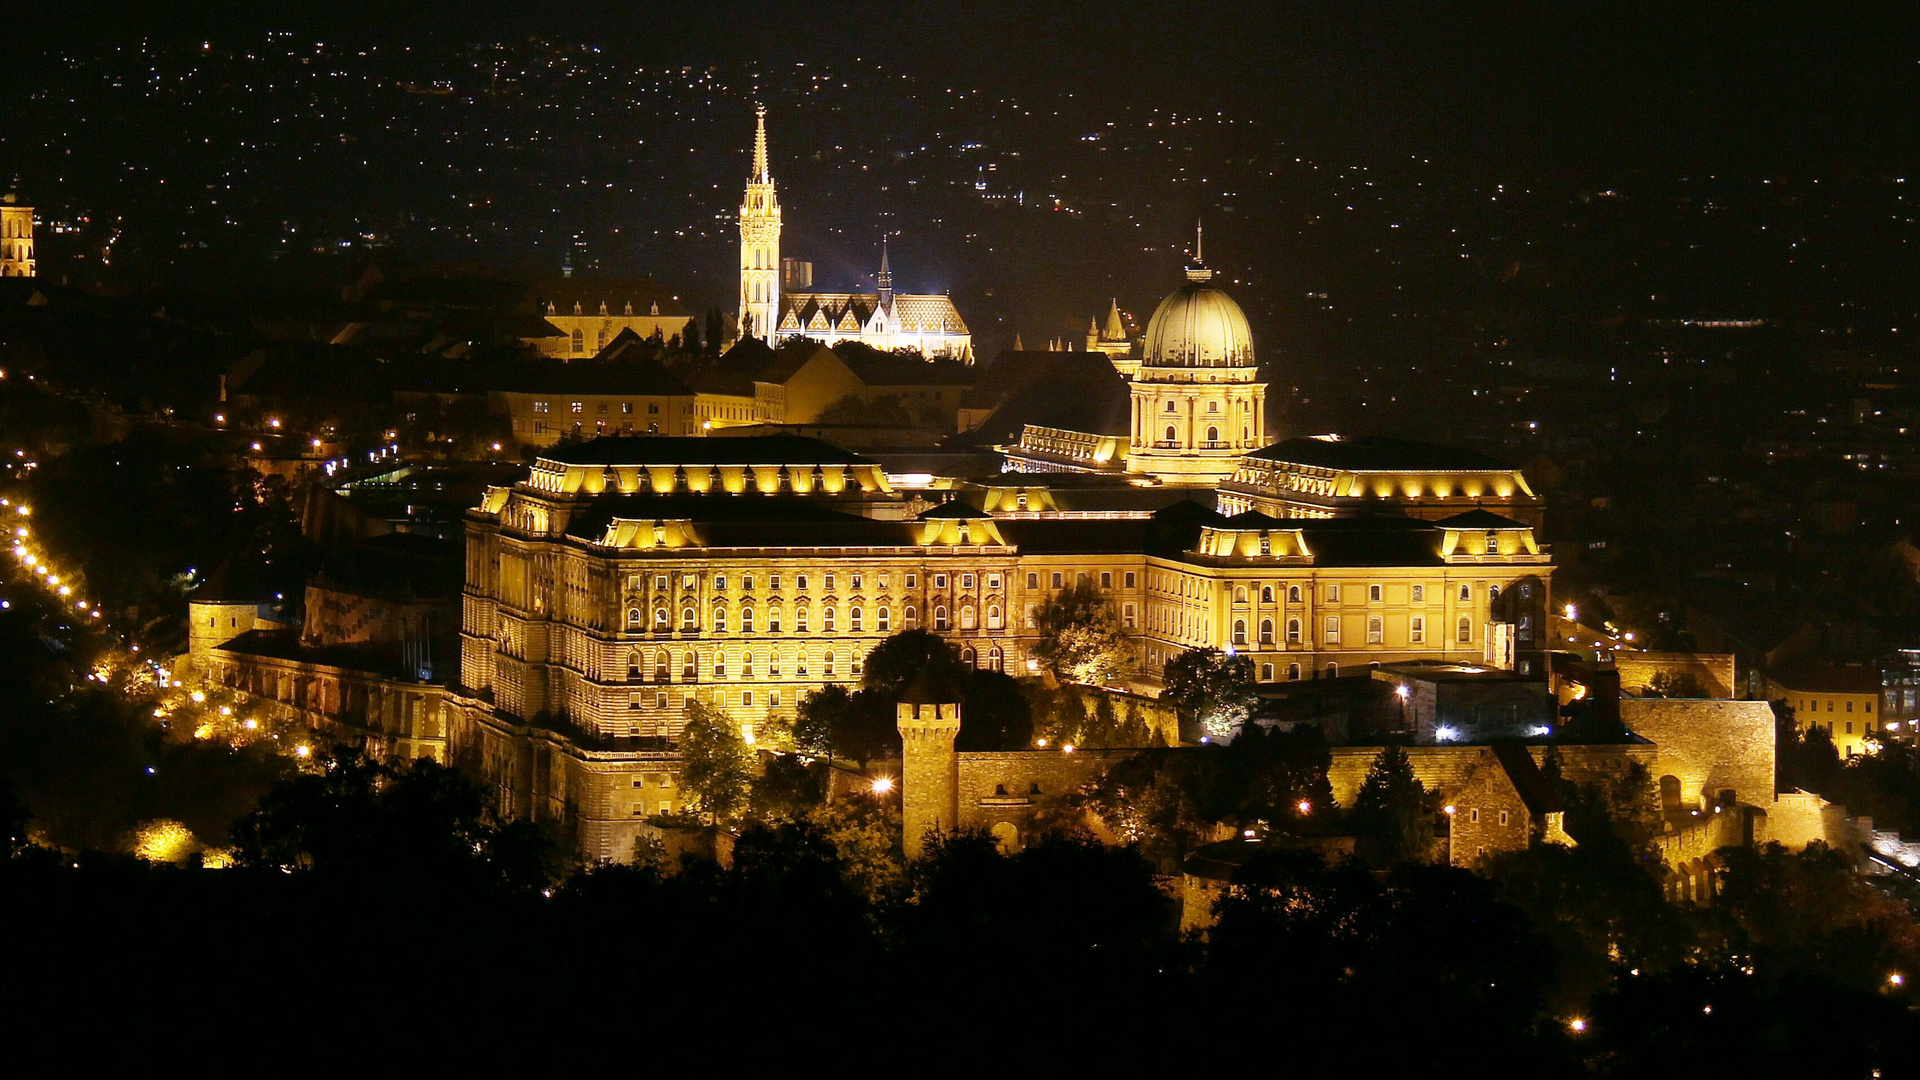 Budapest bei Nacht